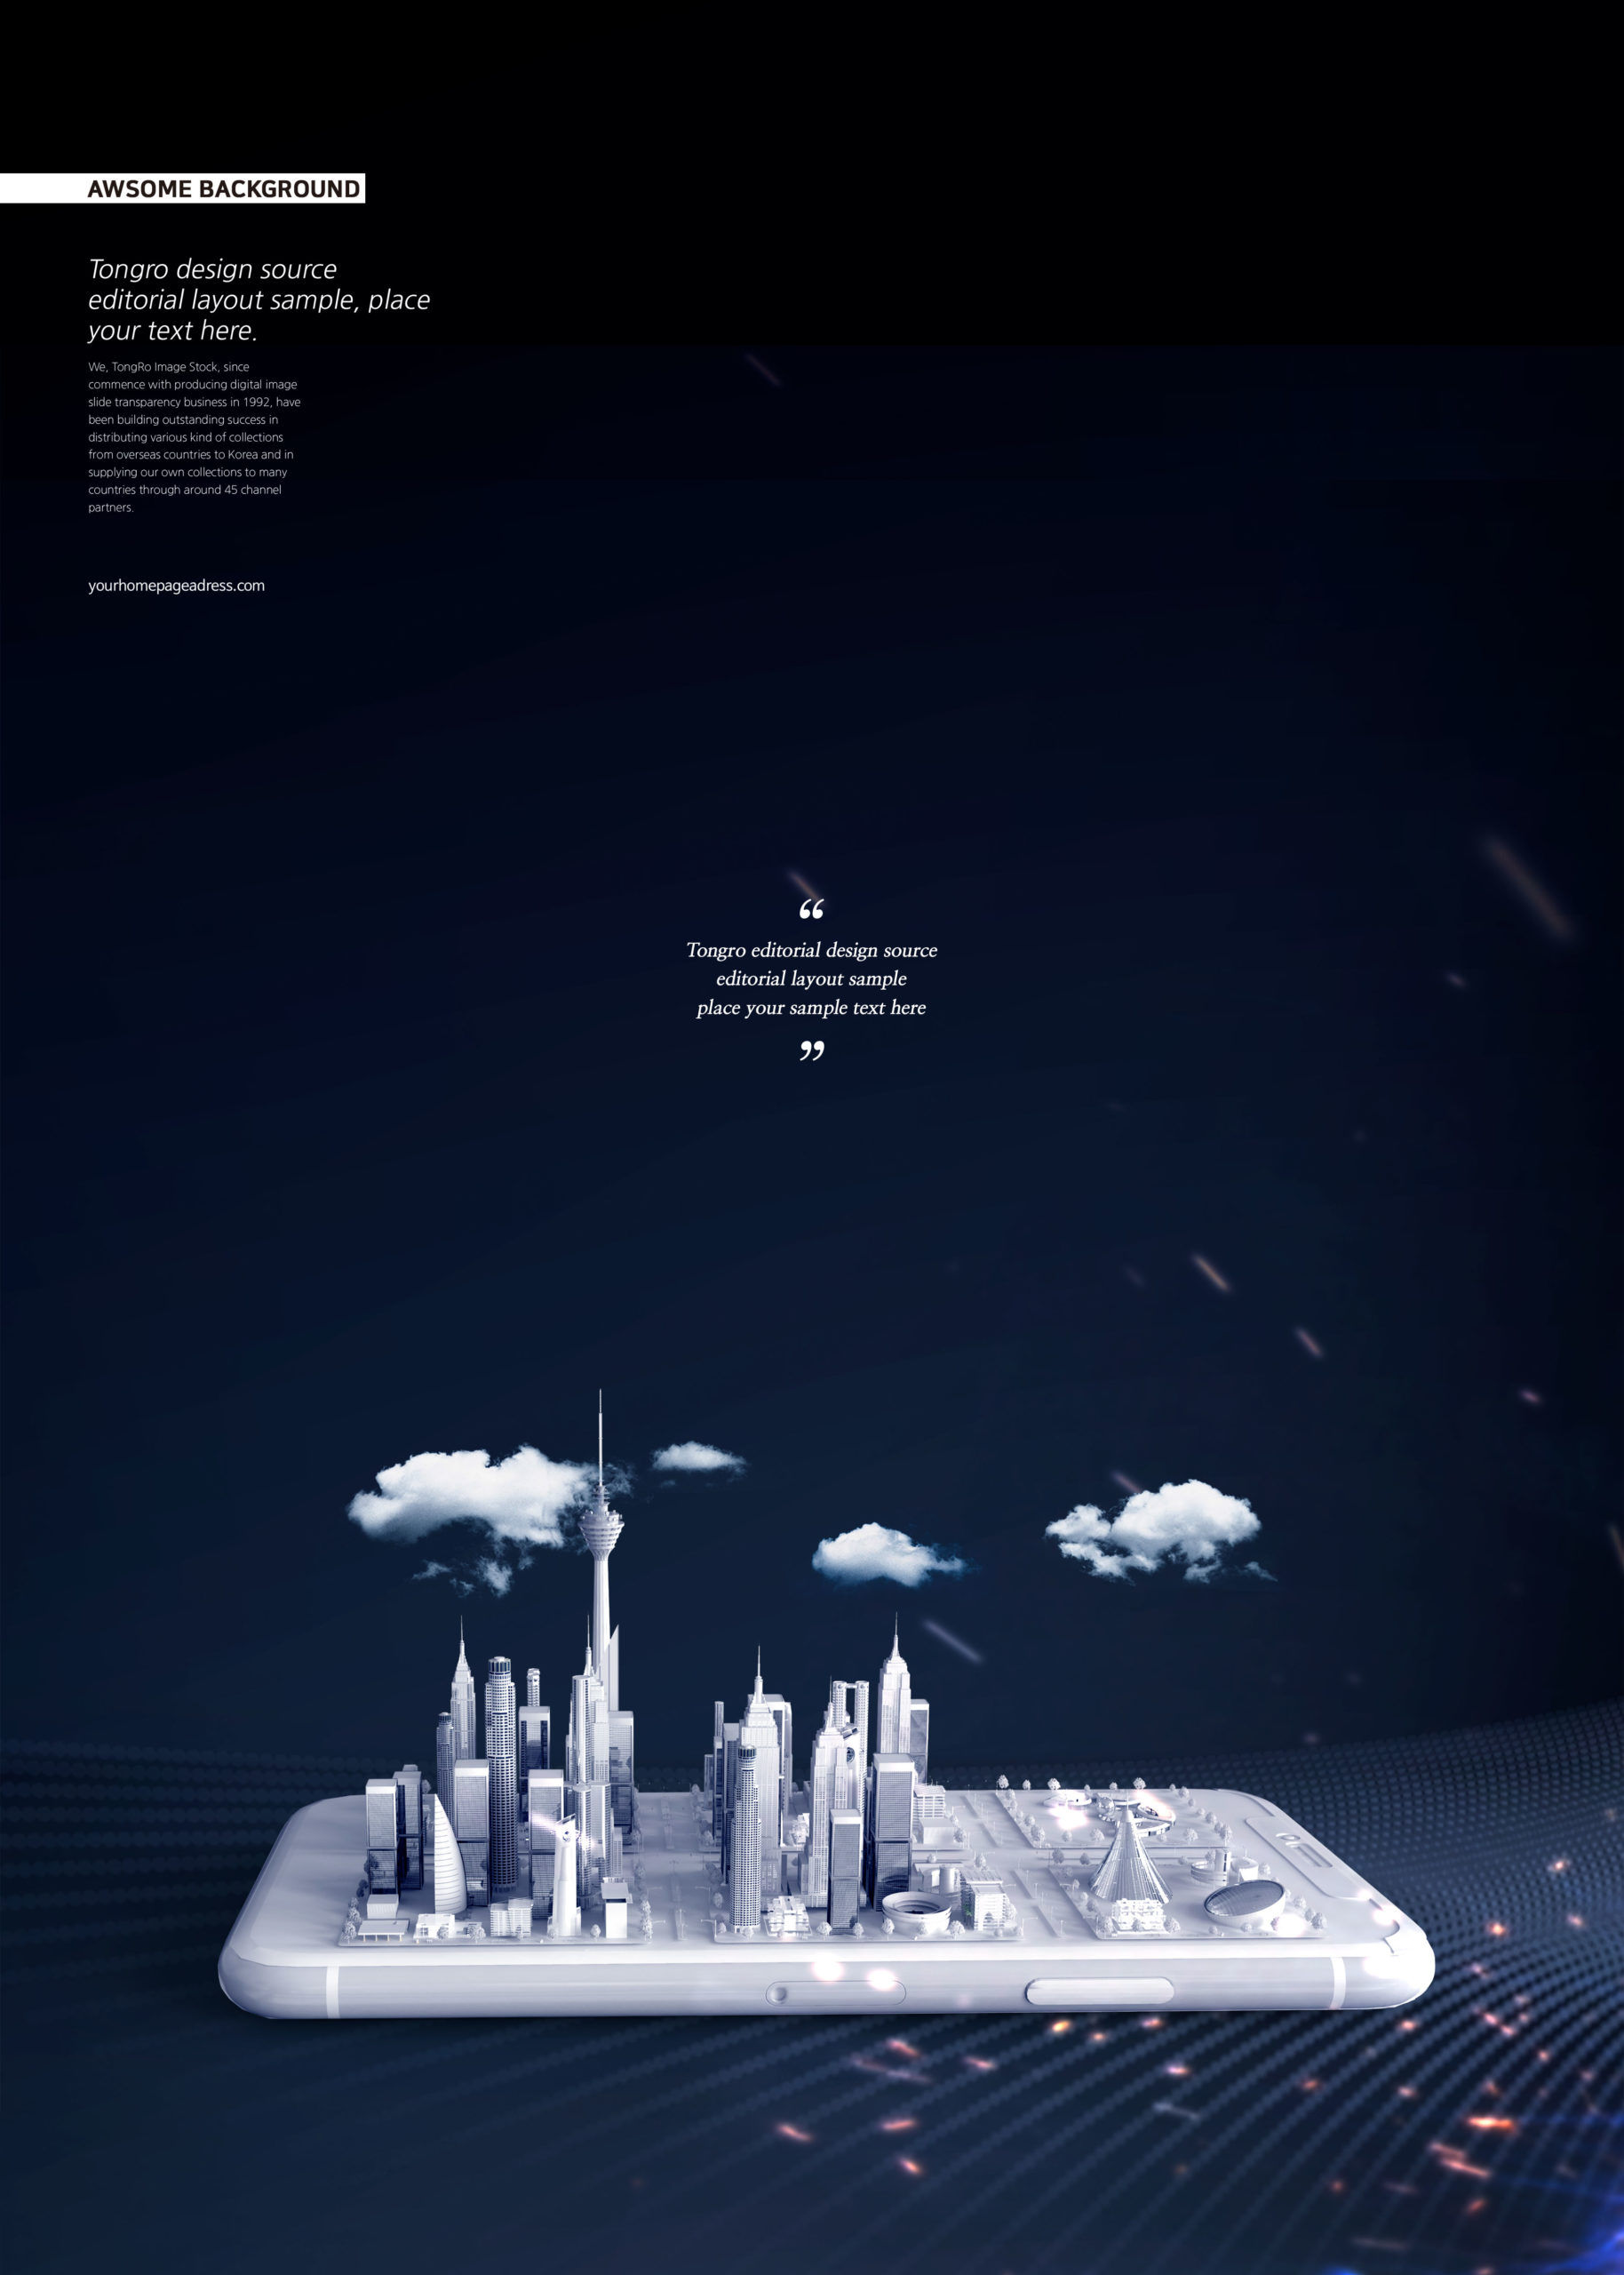 暗黑背景未来科技城市主题海报PSD素材第一素材精选插图